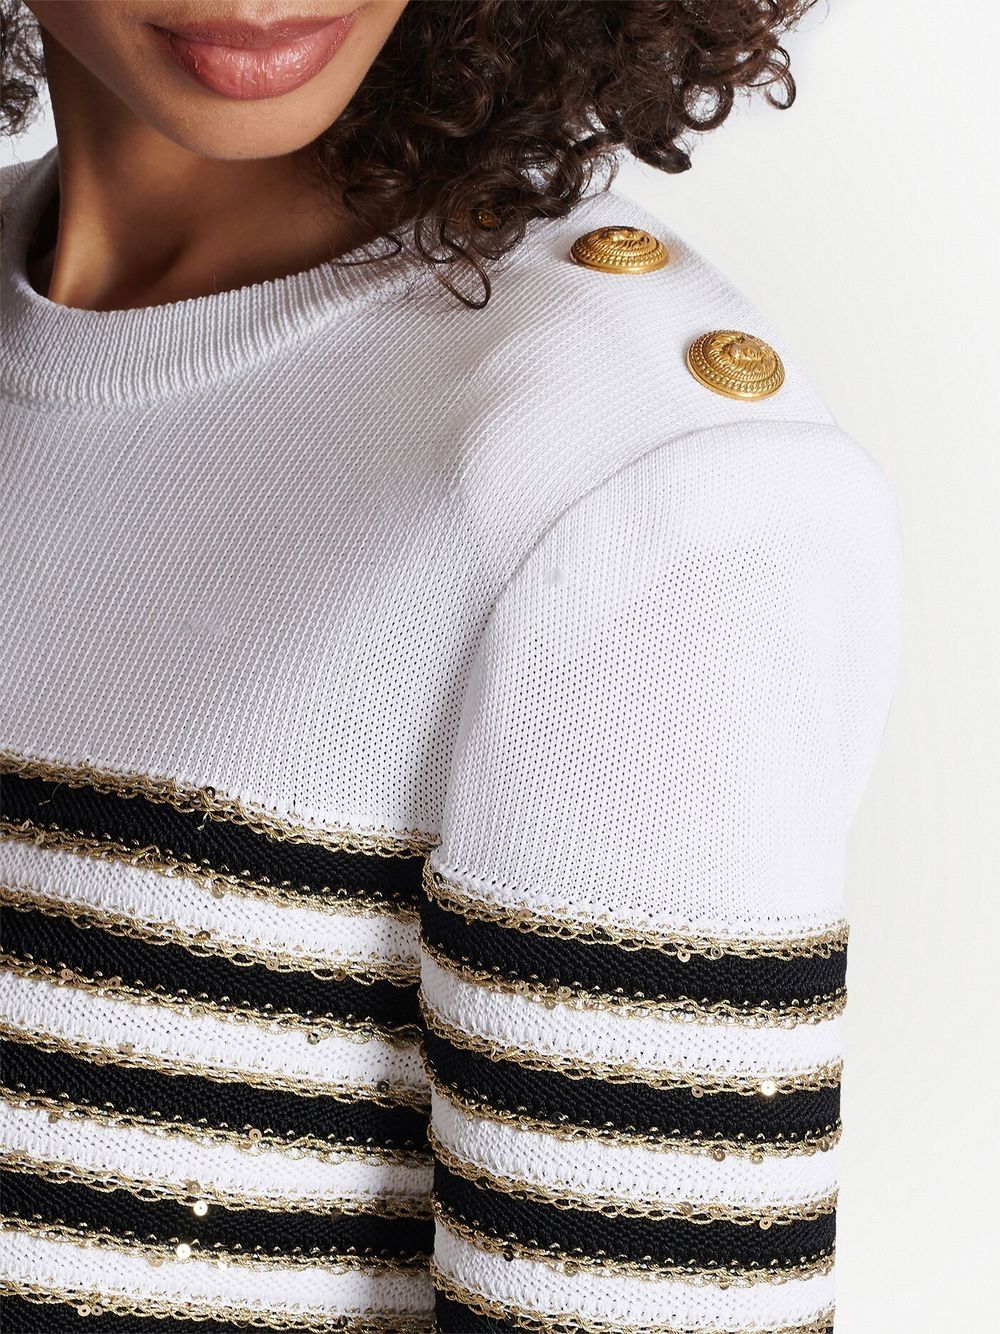 BALMAIN WOMEN 3BTN Striped Knit Top White/Black - MAISONDEFASHION.COM